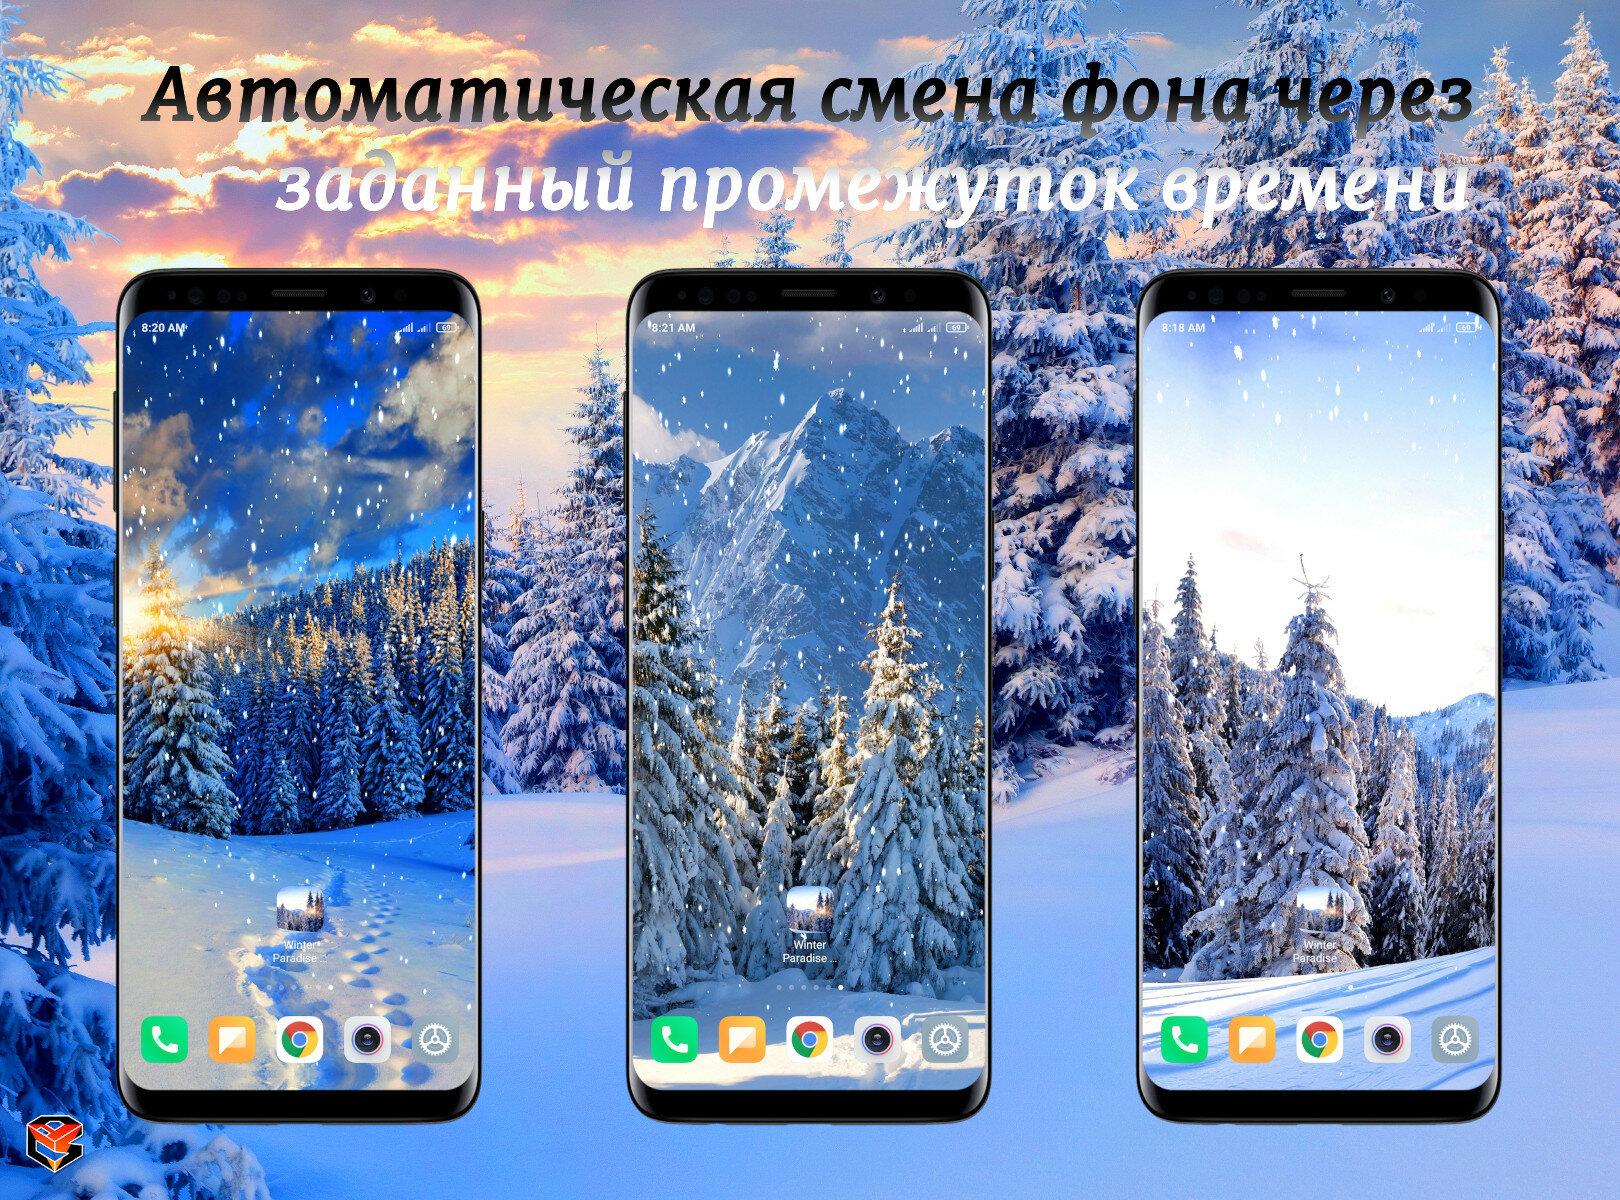 Обои на телефон лес, снег, зима, закат, зимний пейзаж - скачать бесплатно в  высоком качестве из категории \"Природа\"